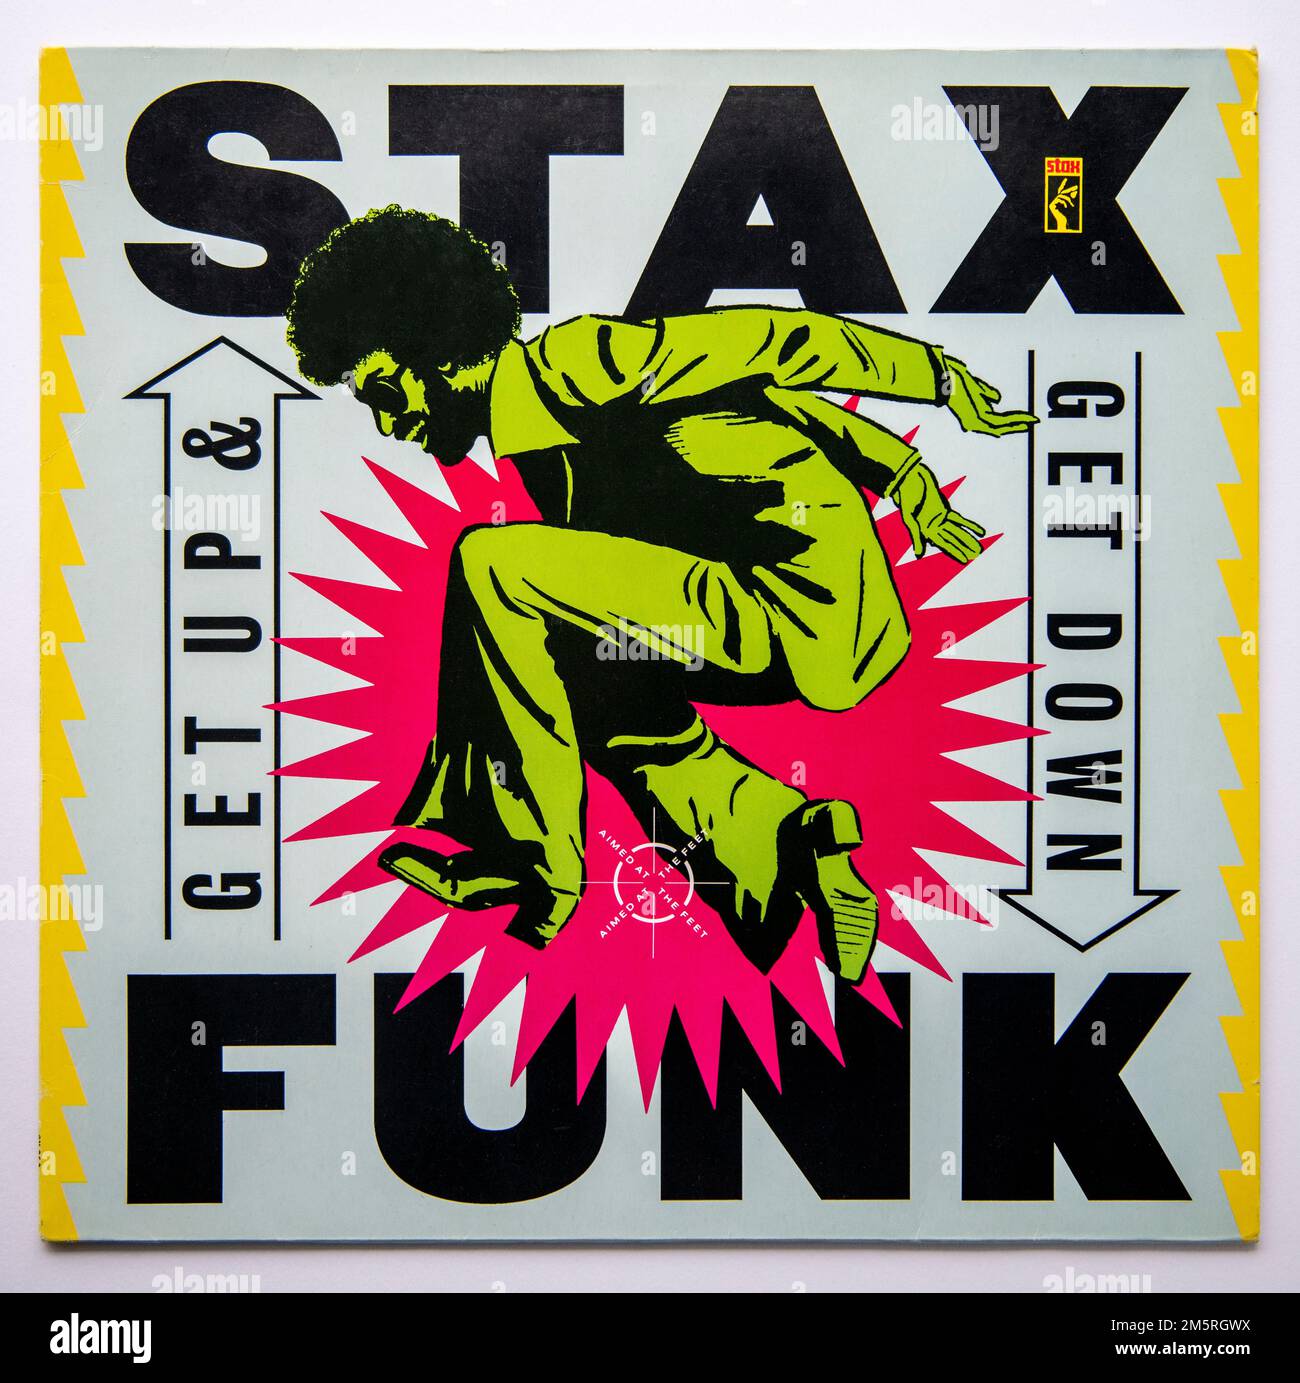 Couverture LP de l'album de compilation Get Up and Get Down de Stax Funk, sorti en 1989 Banque D'Images